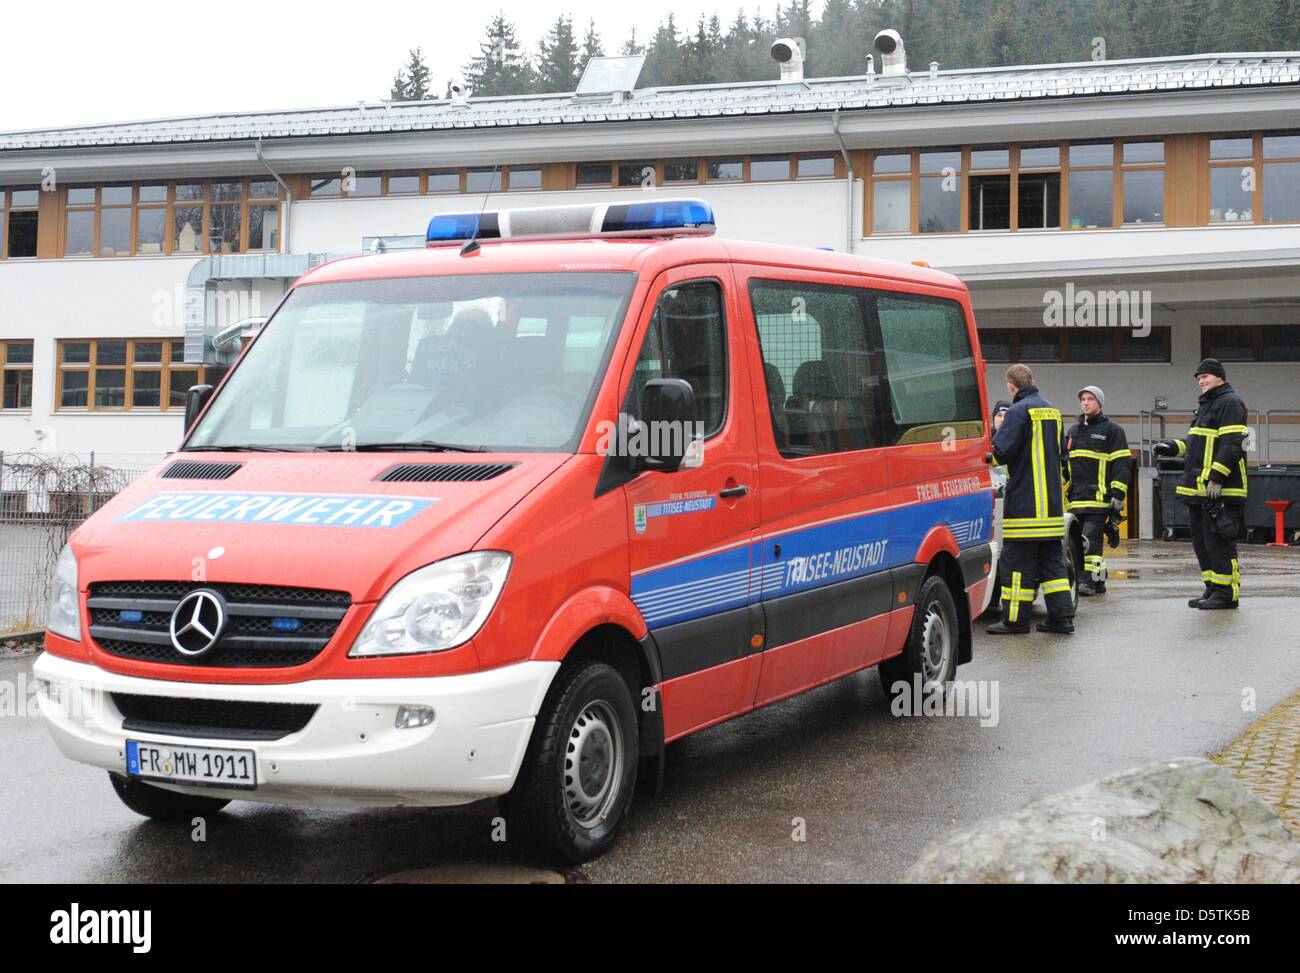 Ein Fahrzeug der Feuerwehr steht vor einer Werkstatt für Menschen mit Behinderungen in Titisee-Neustadt, Deutschland, 27. November 2012. 14 Menschen starben bei einem Feuer breitete sich durch die Werkstatt am 26. November. Foto: PATRICK SEEGER Stockfoto